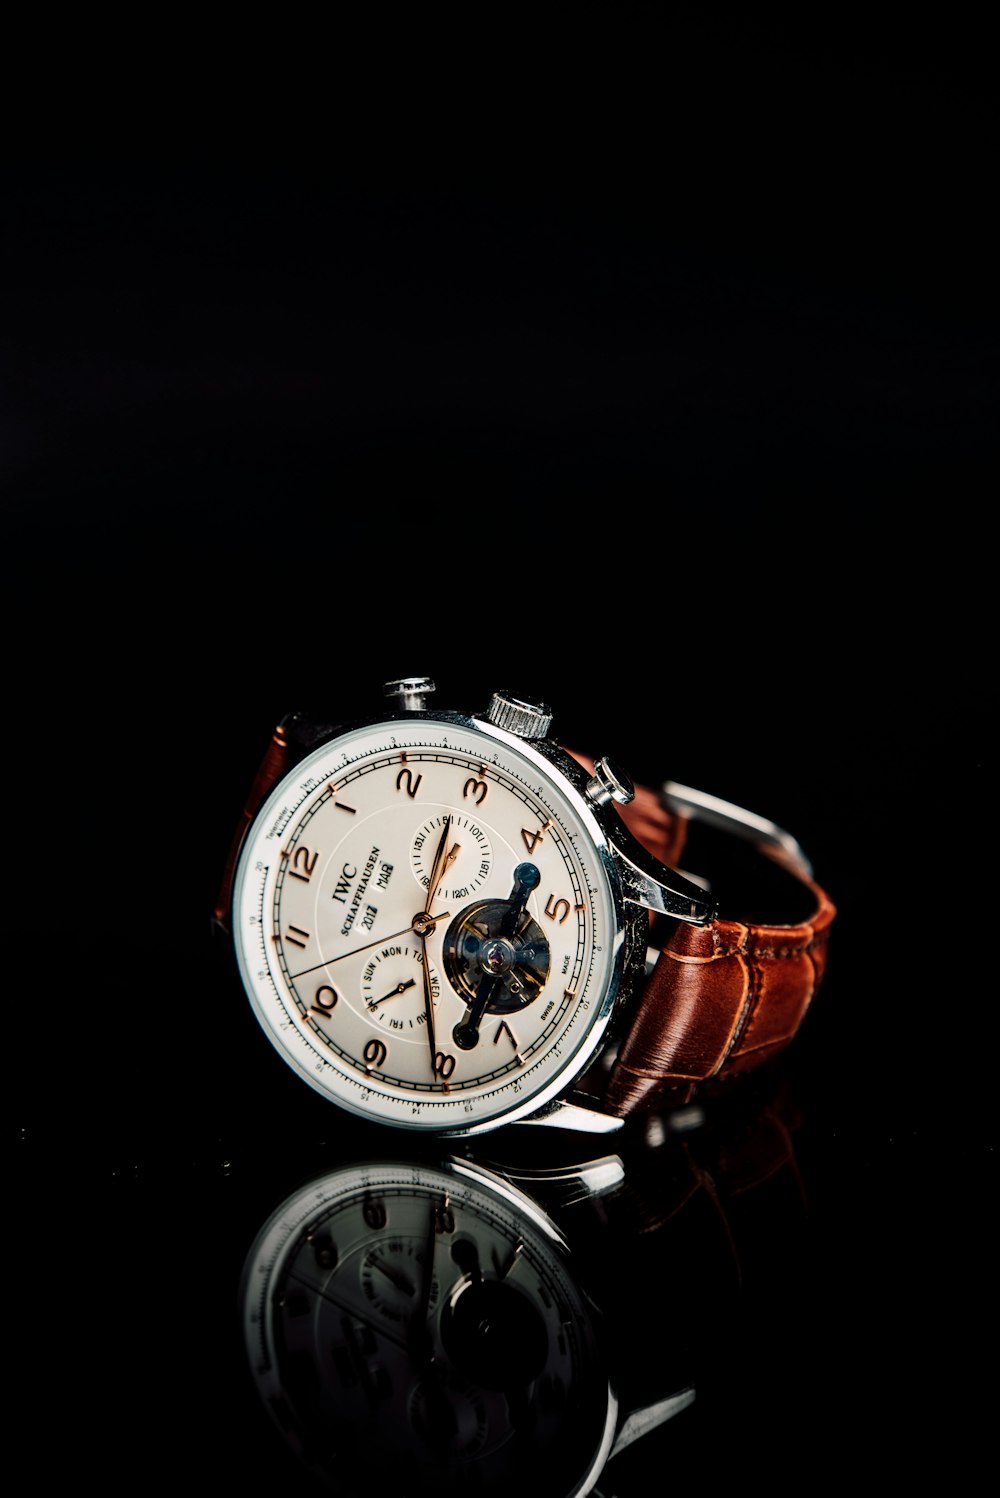 relógio cronógrafo redondo prateado com pulseira de couro marrom